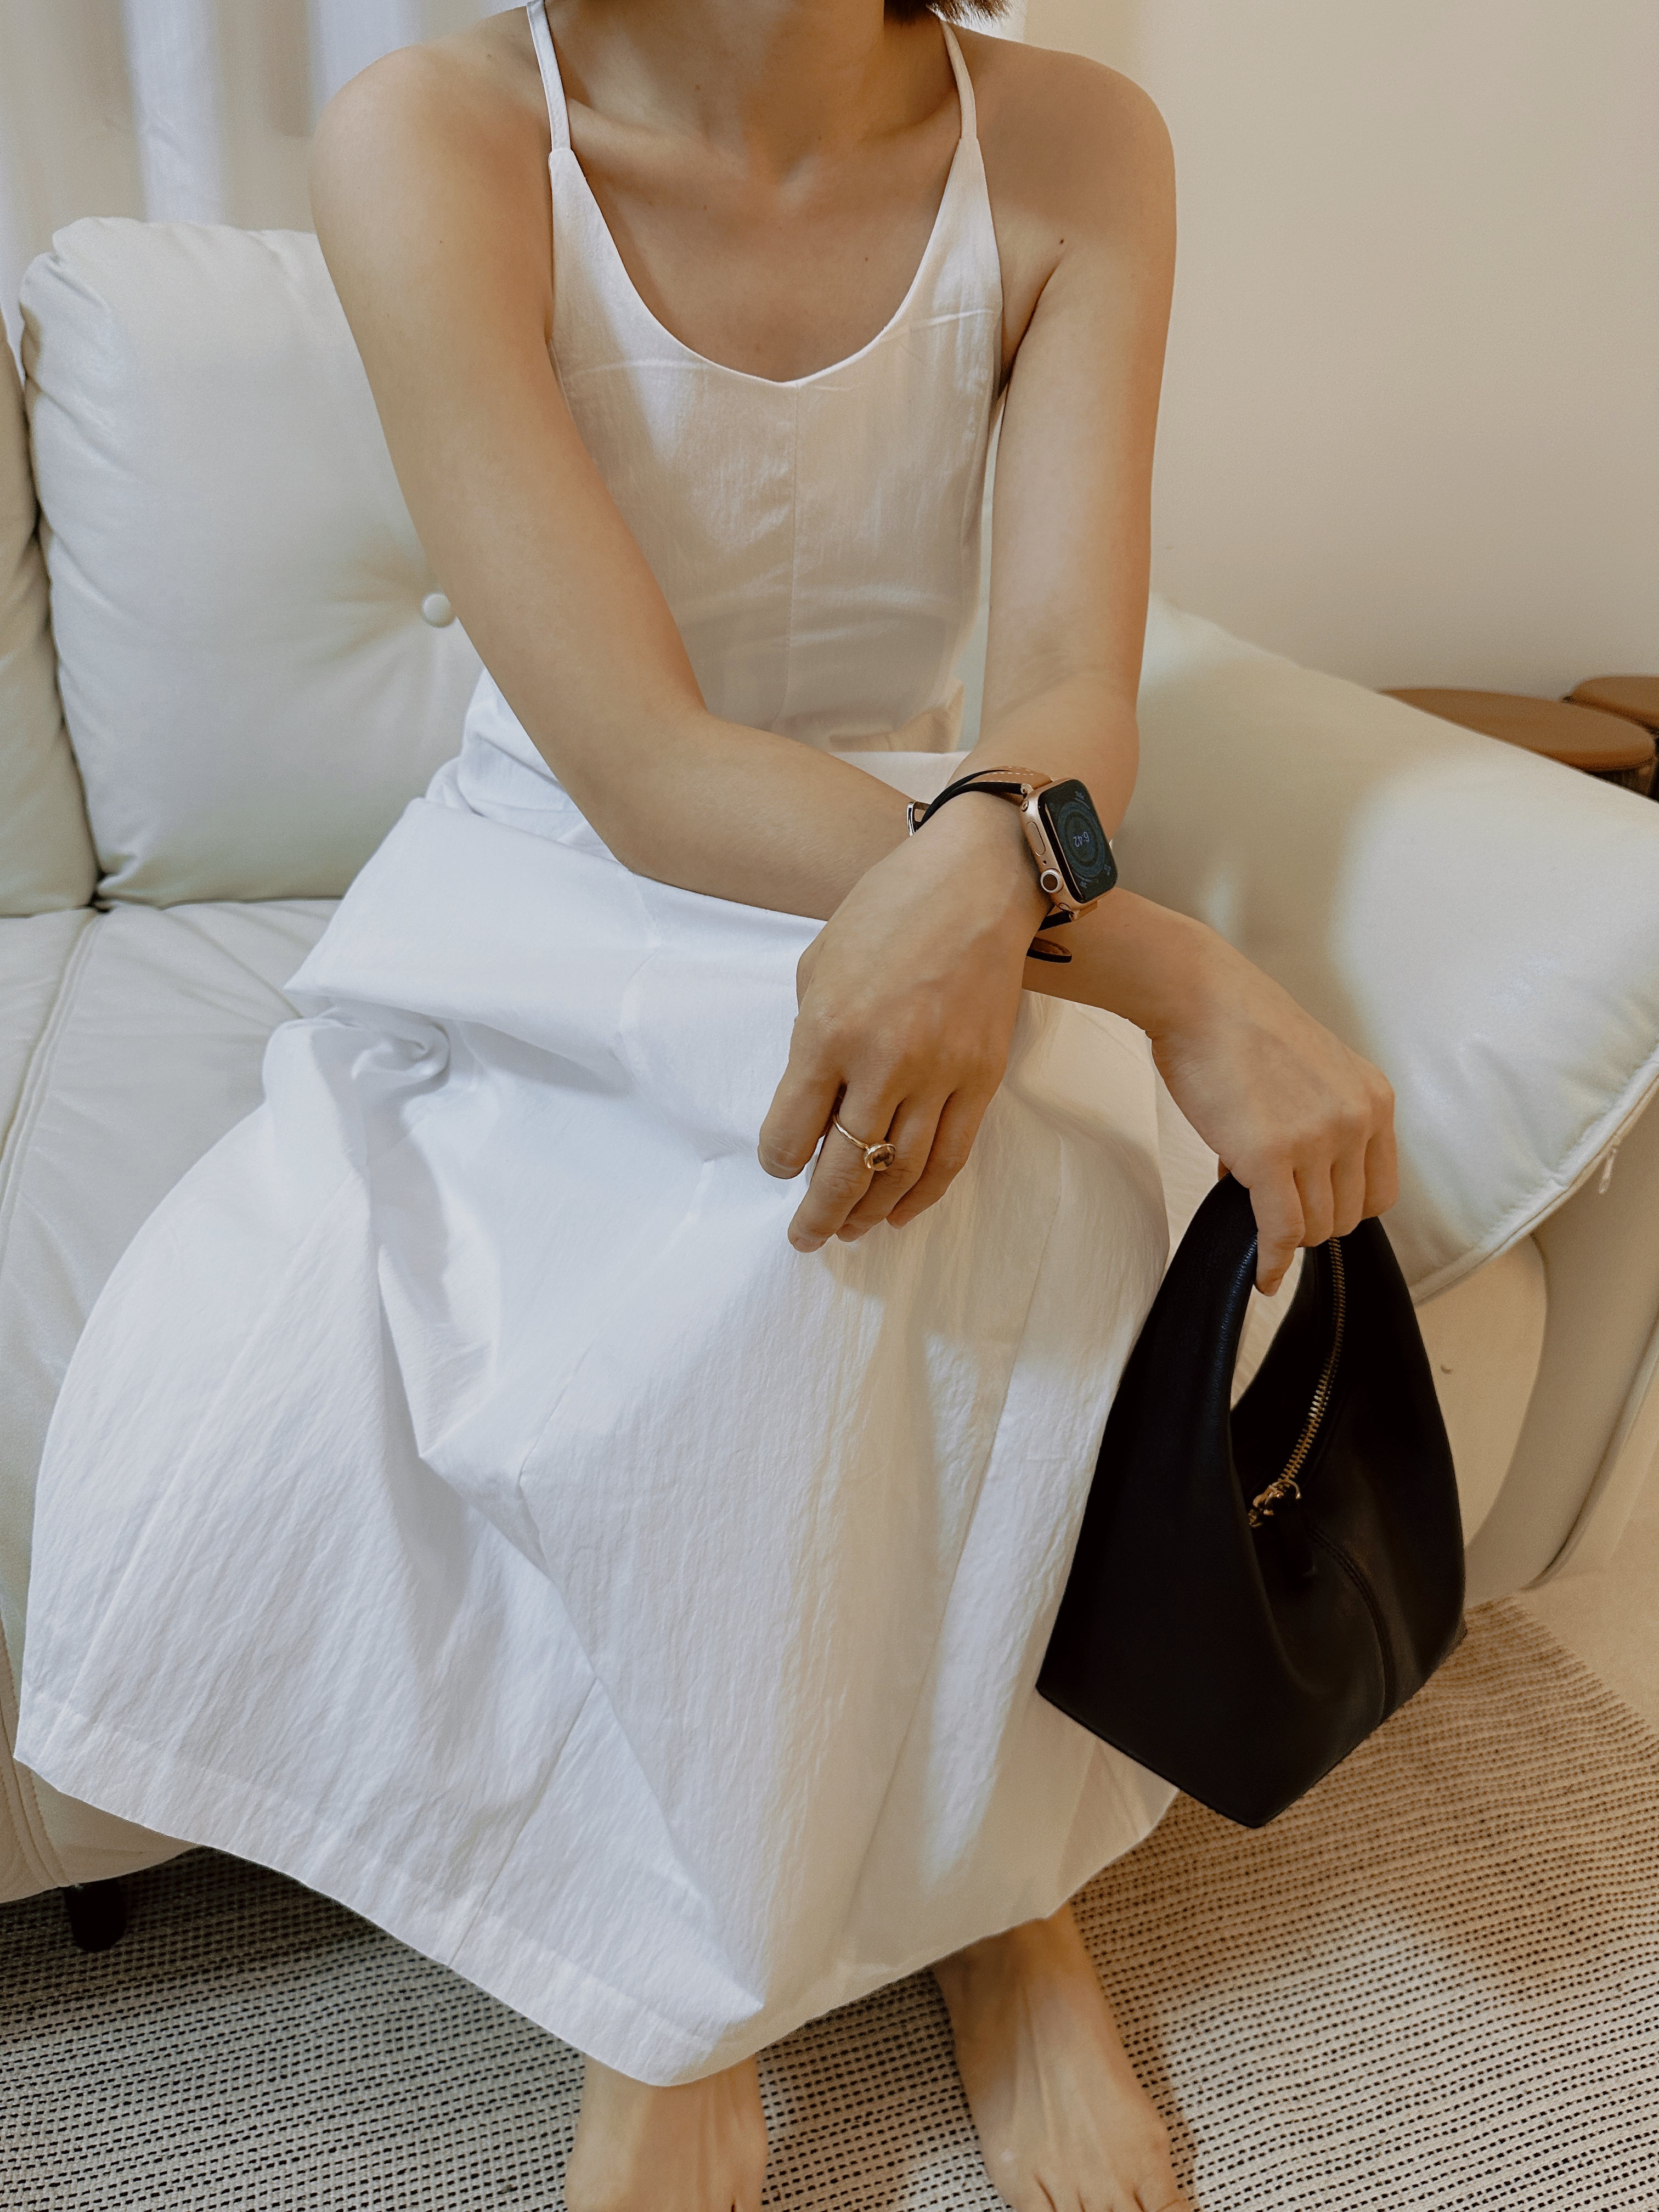 [KR] Deep Cut Cami Maxi Dress in White